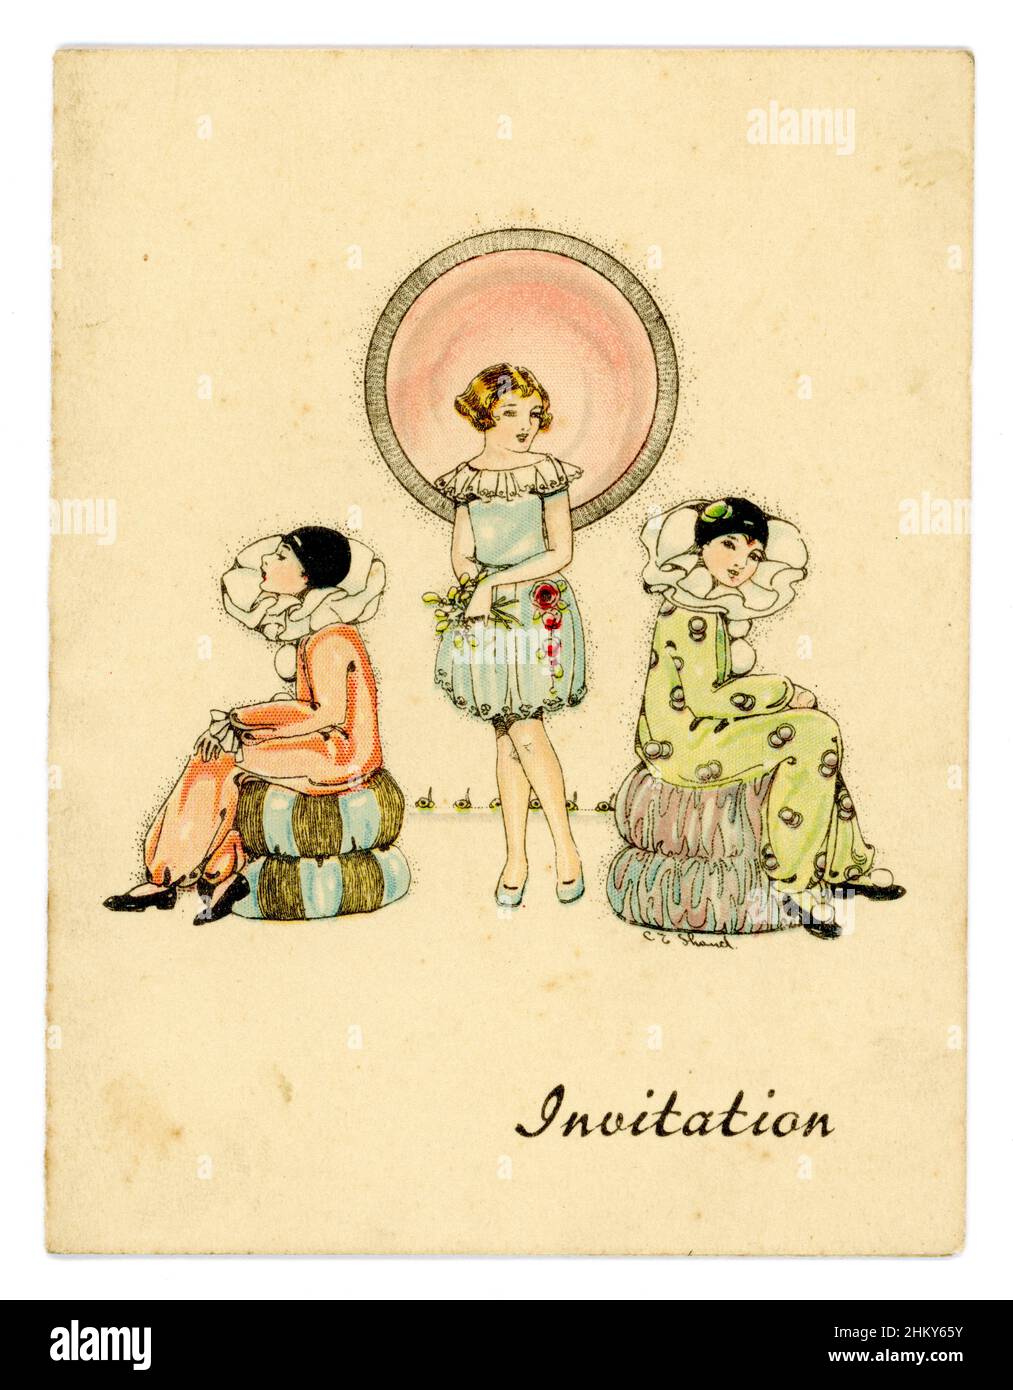 Original de la fête des années 1920 invitation de la jeune fille dans la coiffure de bob portant une grenouille de fête, ses 2 amis sont vêtus de costumes de Pierrot fantaisie dans le style Art déco - illustration par un illustrateur britannique. Banque D'Images